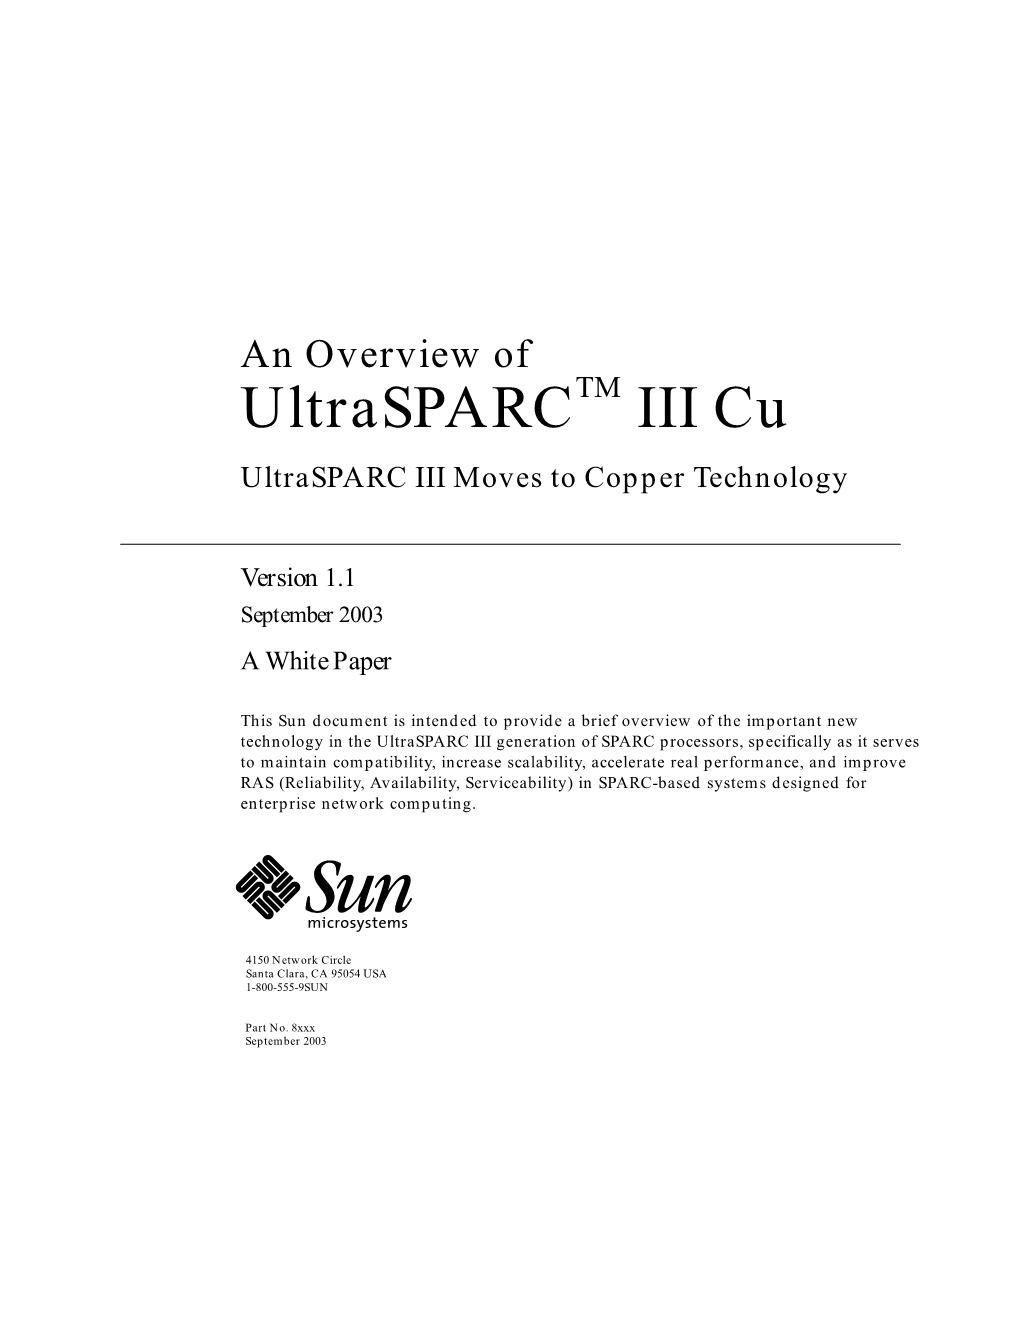 Ultrasparc III Cu Goals